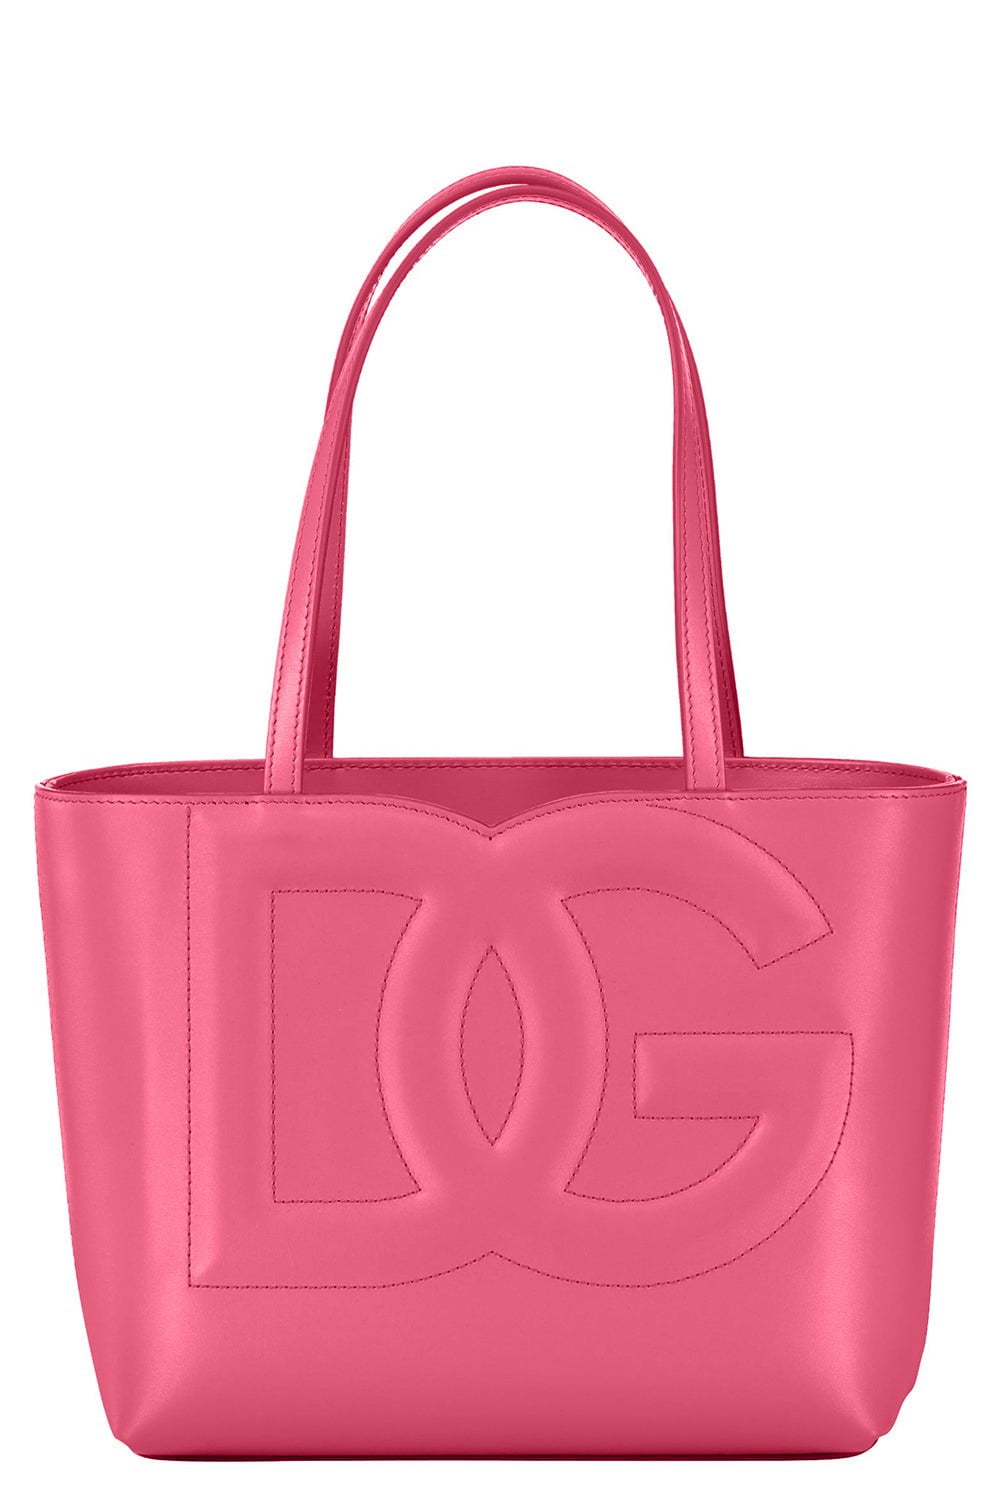 DOLCE & GABBANA-Small Logo Bag Shopper - Glicine-GLICINE